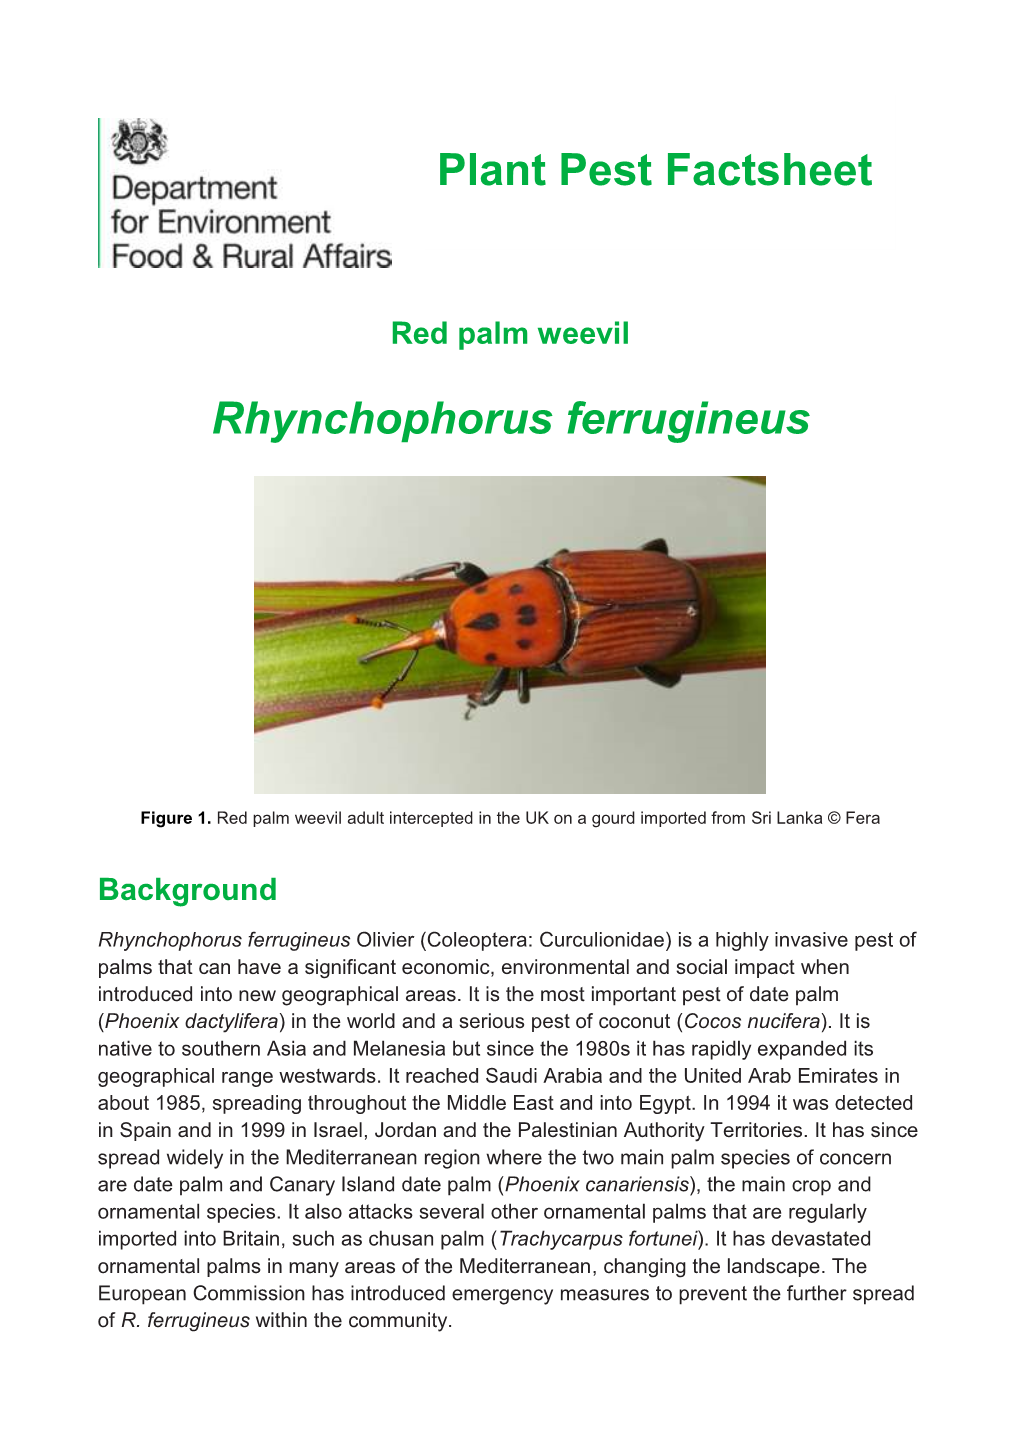 Rhynchophorus Ferrugineus (Red Palm Weevil)